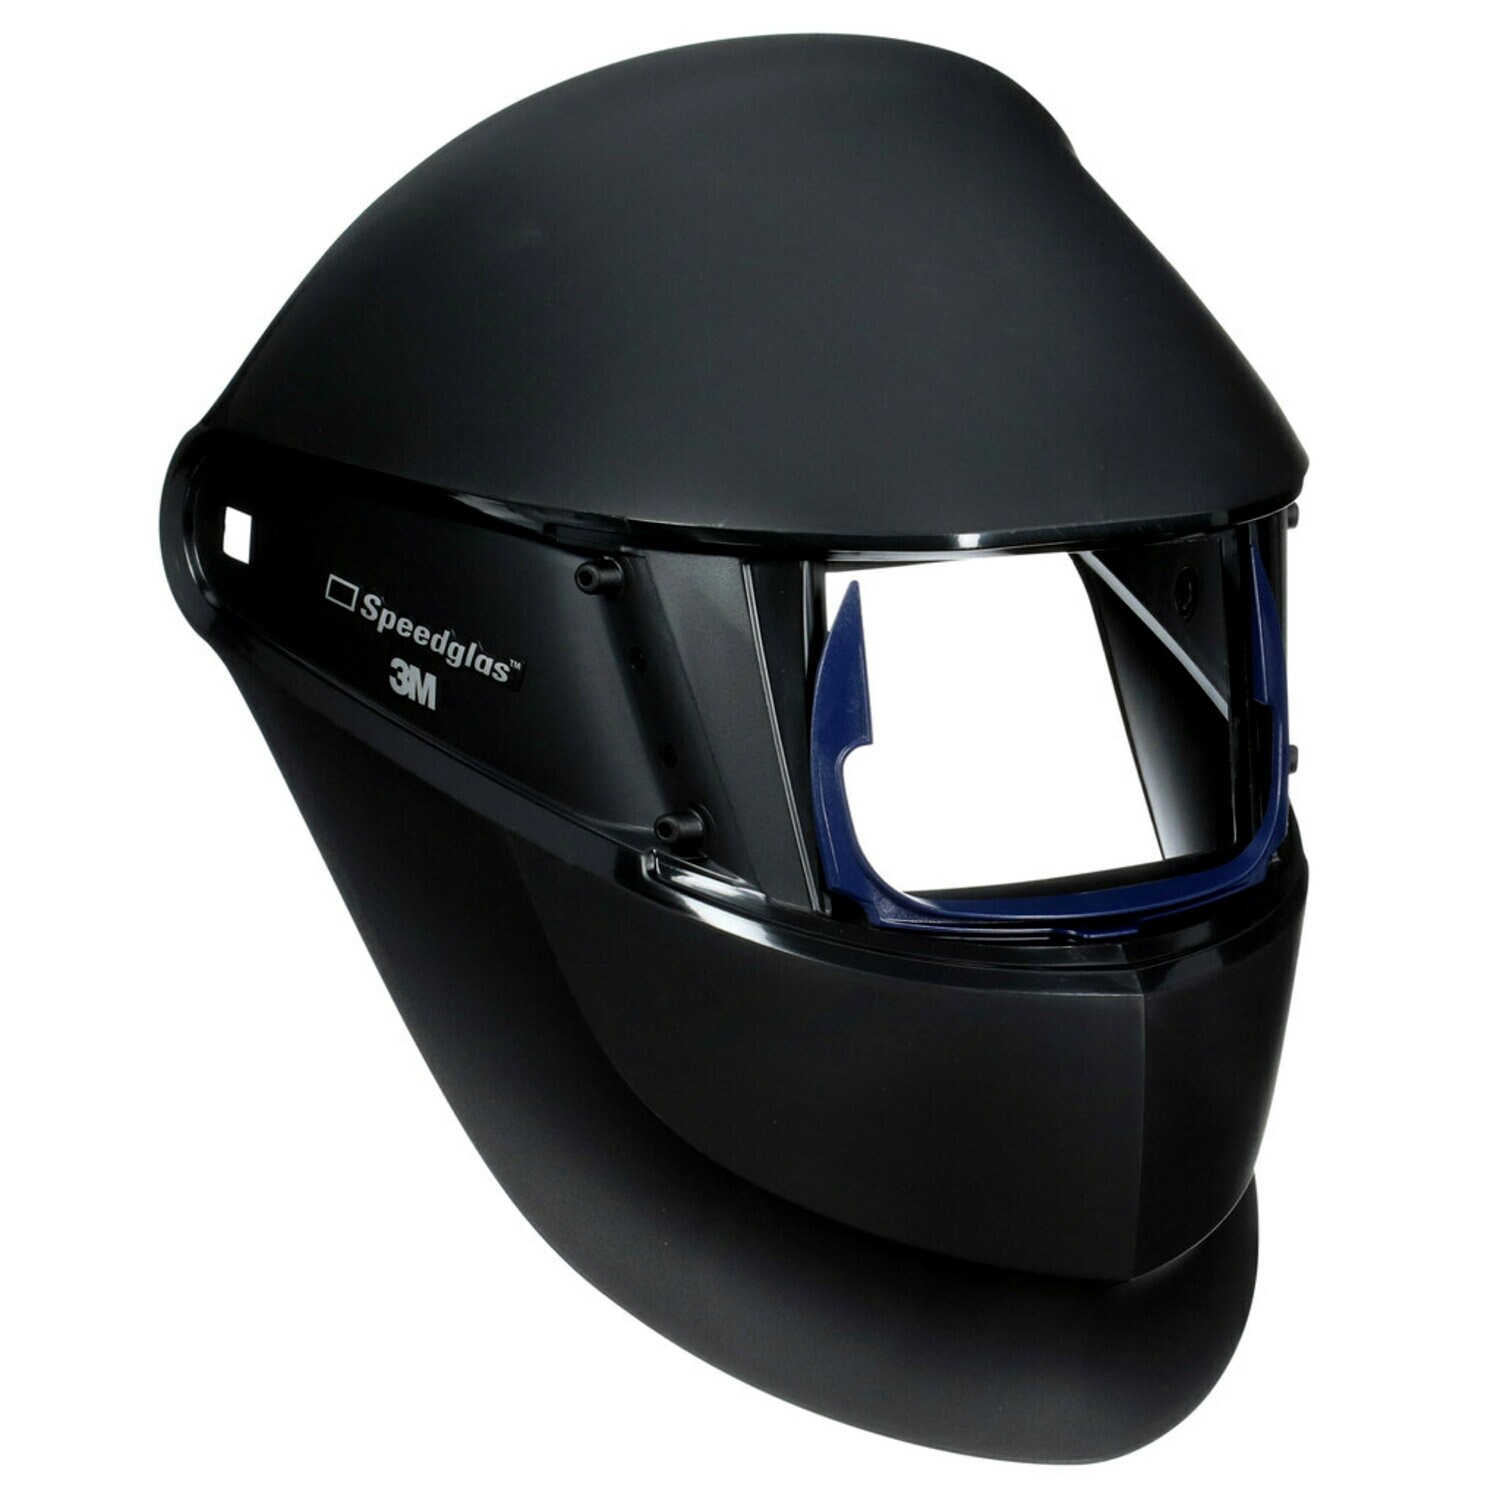 7010384820 - 3M Speedglas Welding Helmet SL, Welding Safety 05-0013-00 1 EA/Case